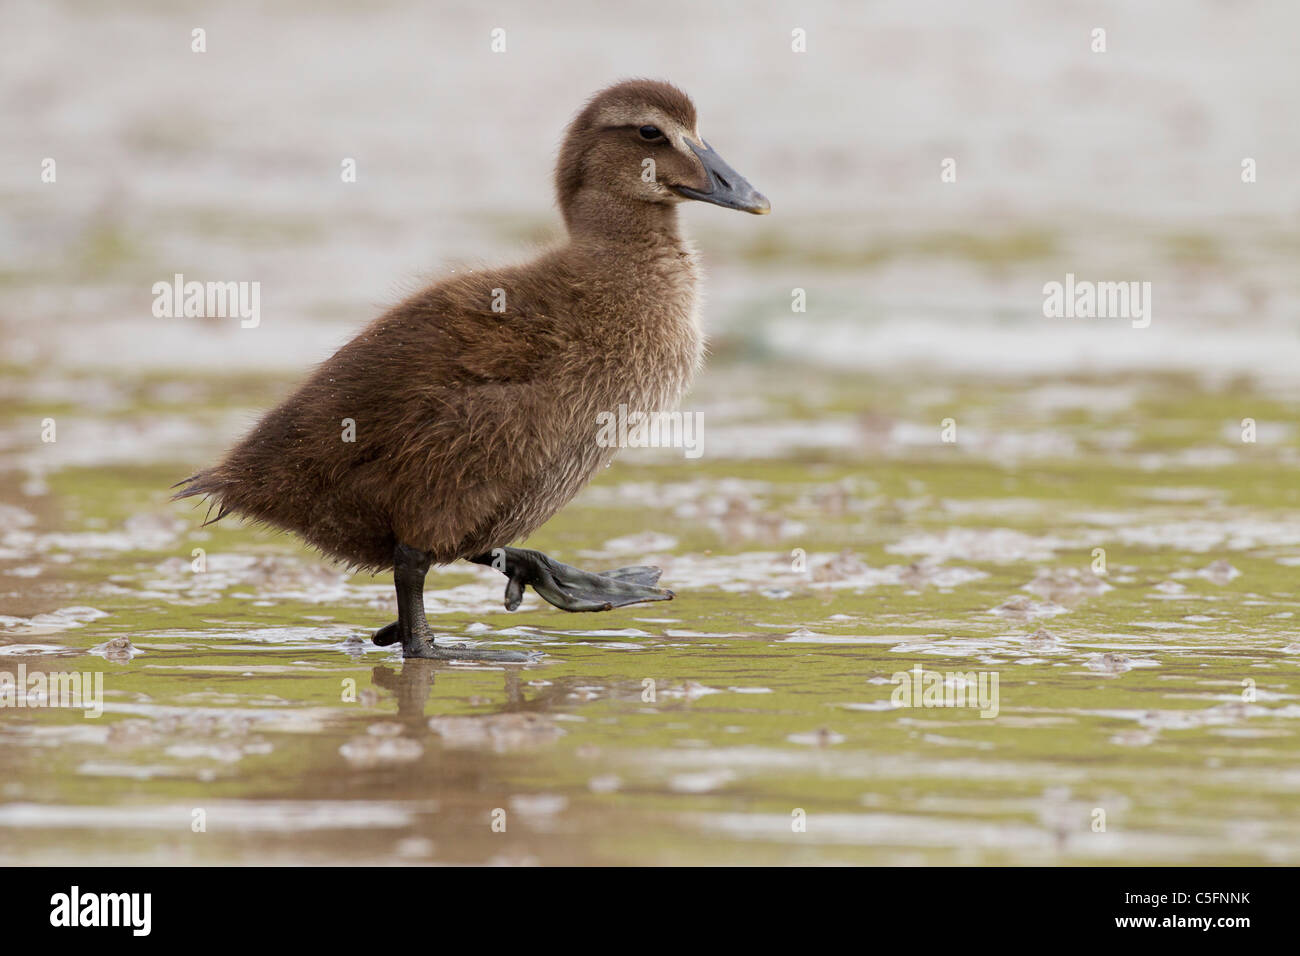 common eider (Somateria mollissima) duckling walking on wet mud, Seahouses, Northumberland, England, UK, Europe Stock Photo